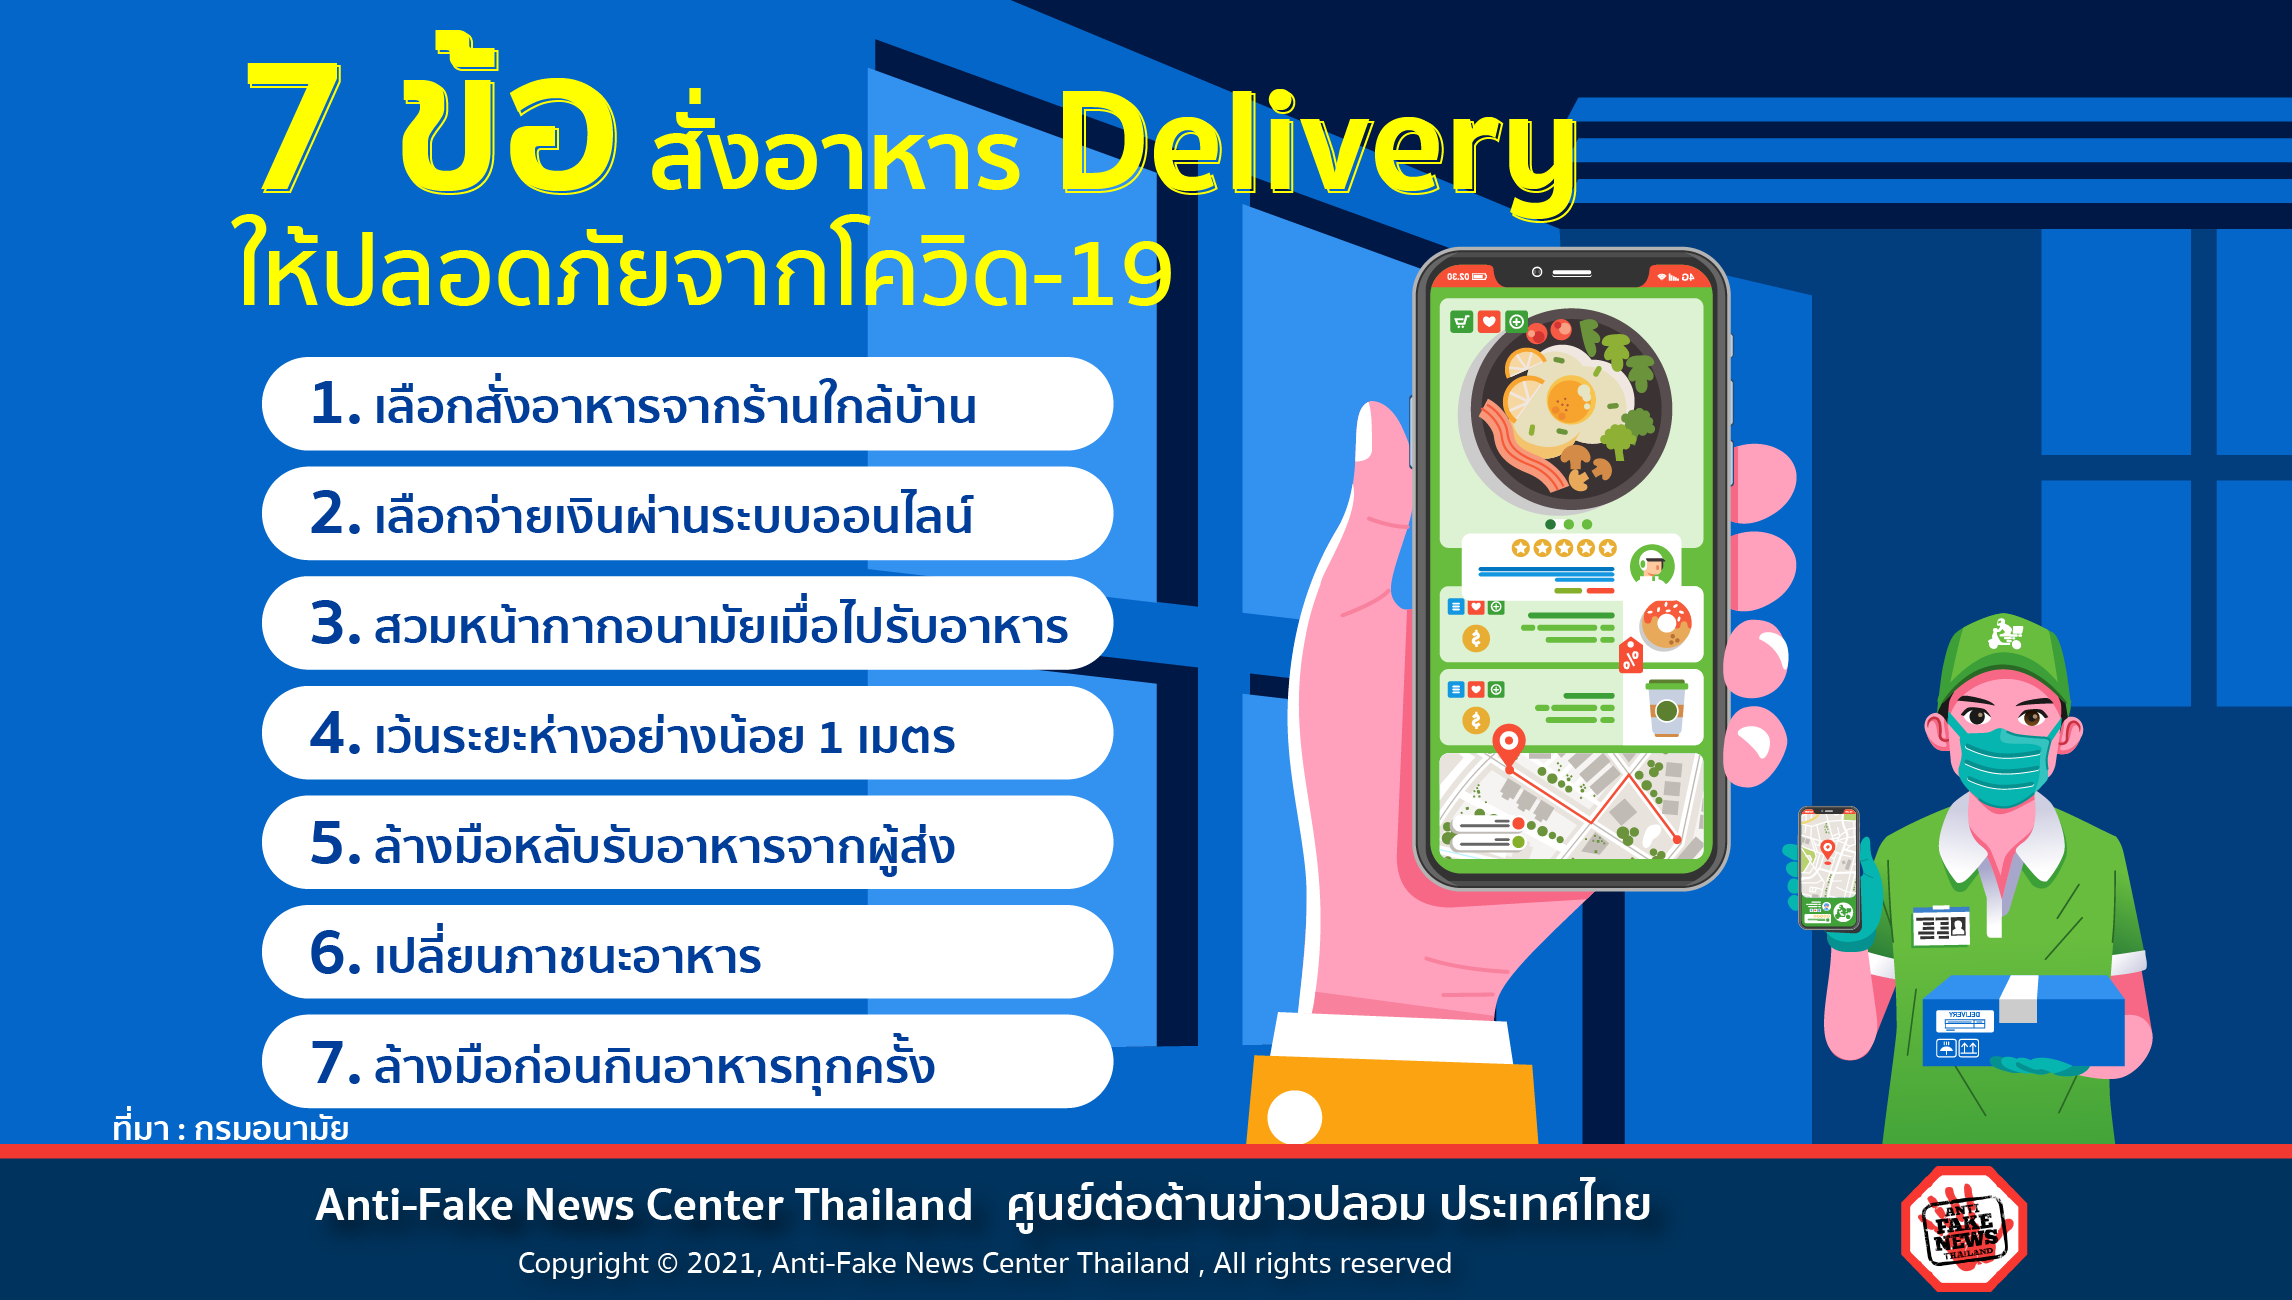 7 ข้อ สั่งอาหาร Delivery ให้ปลอดภัยจากโควิด 19 Website